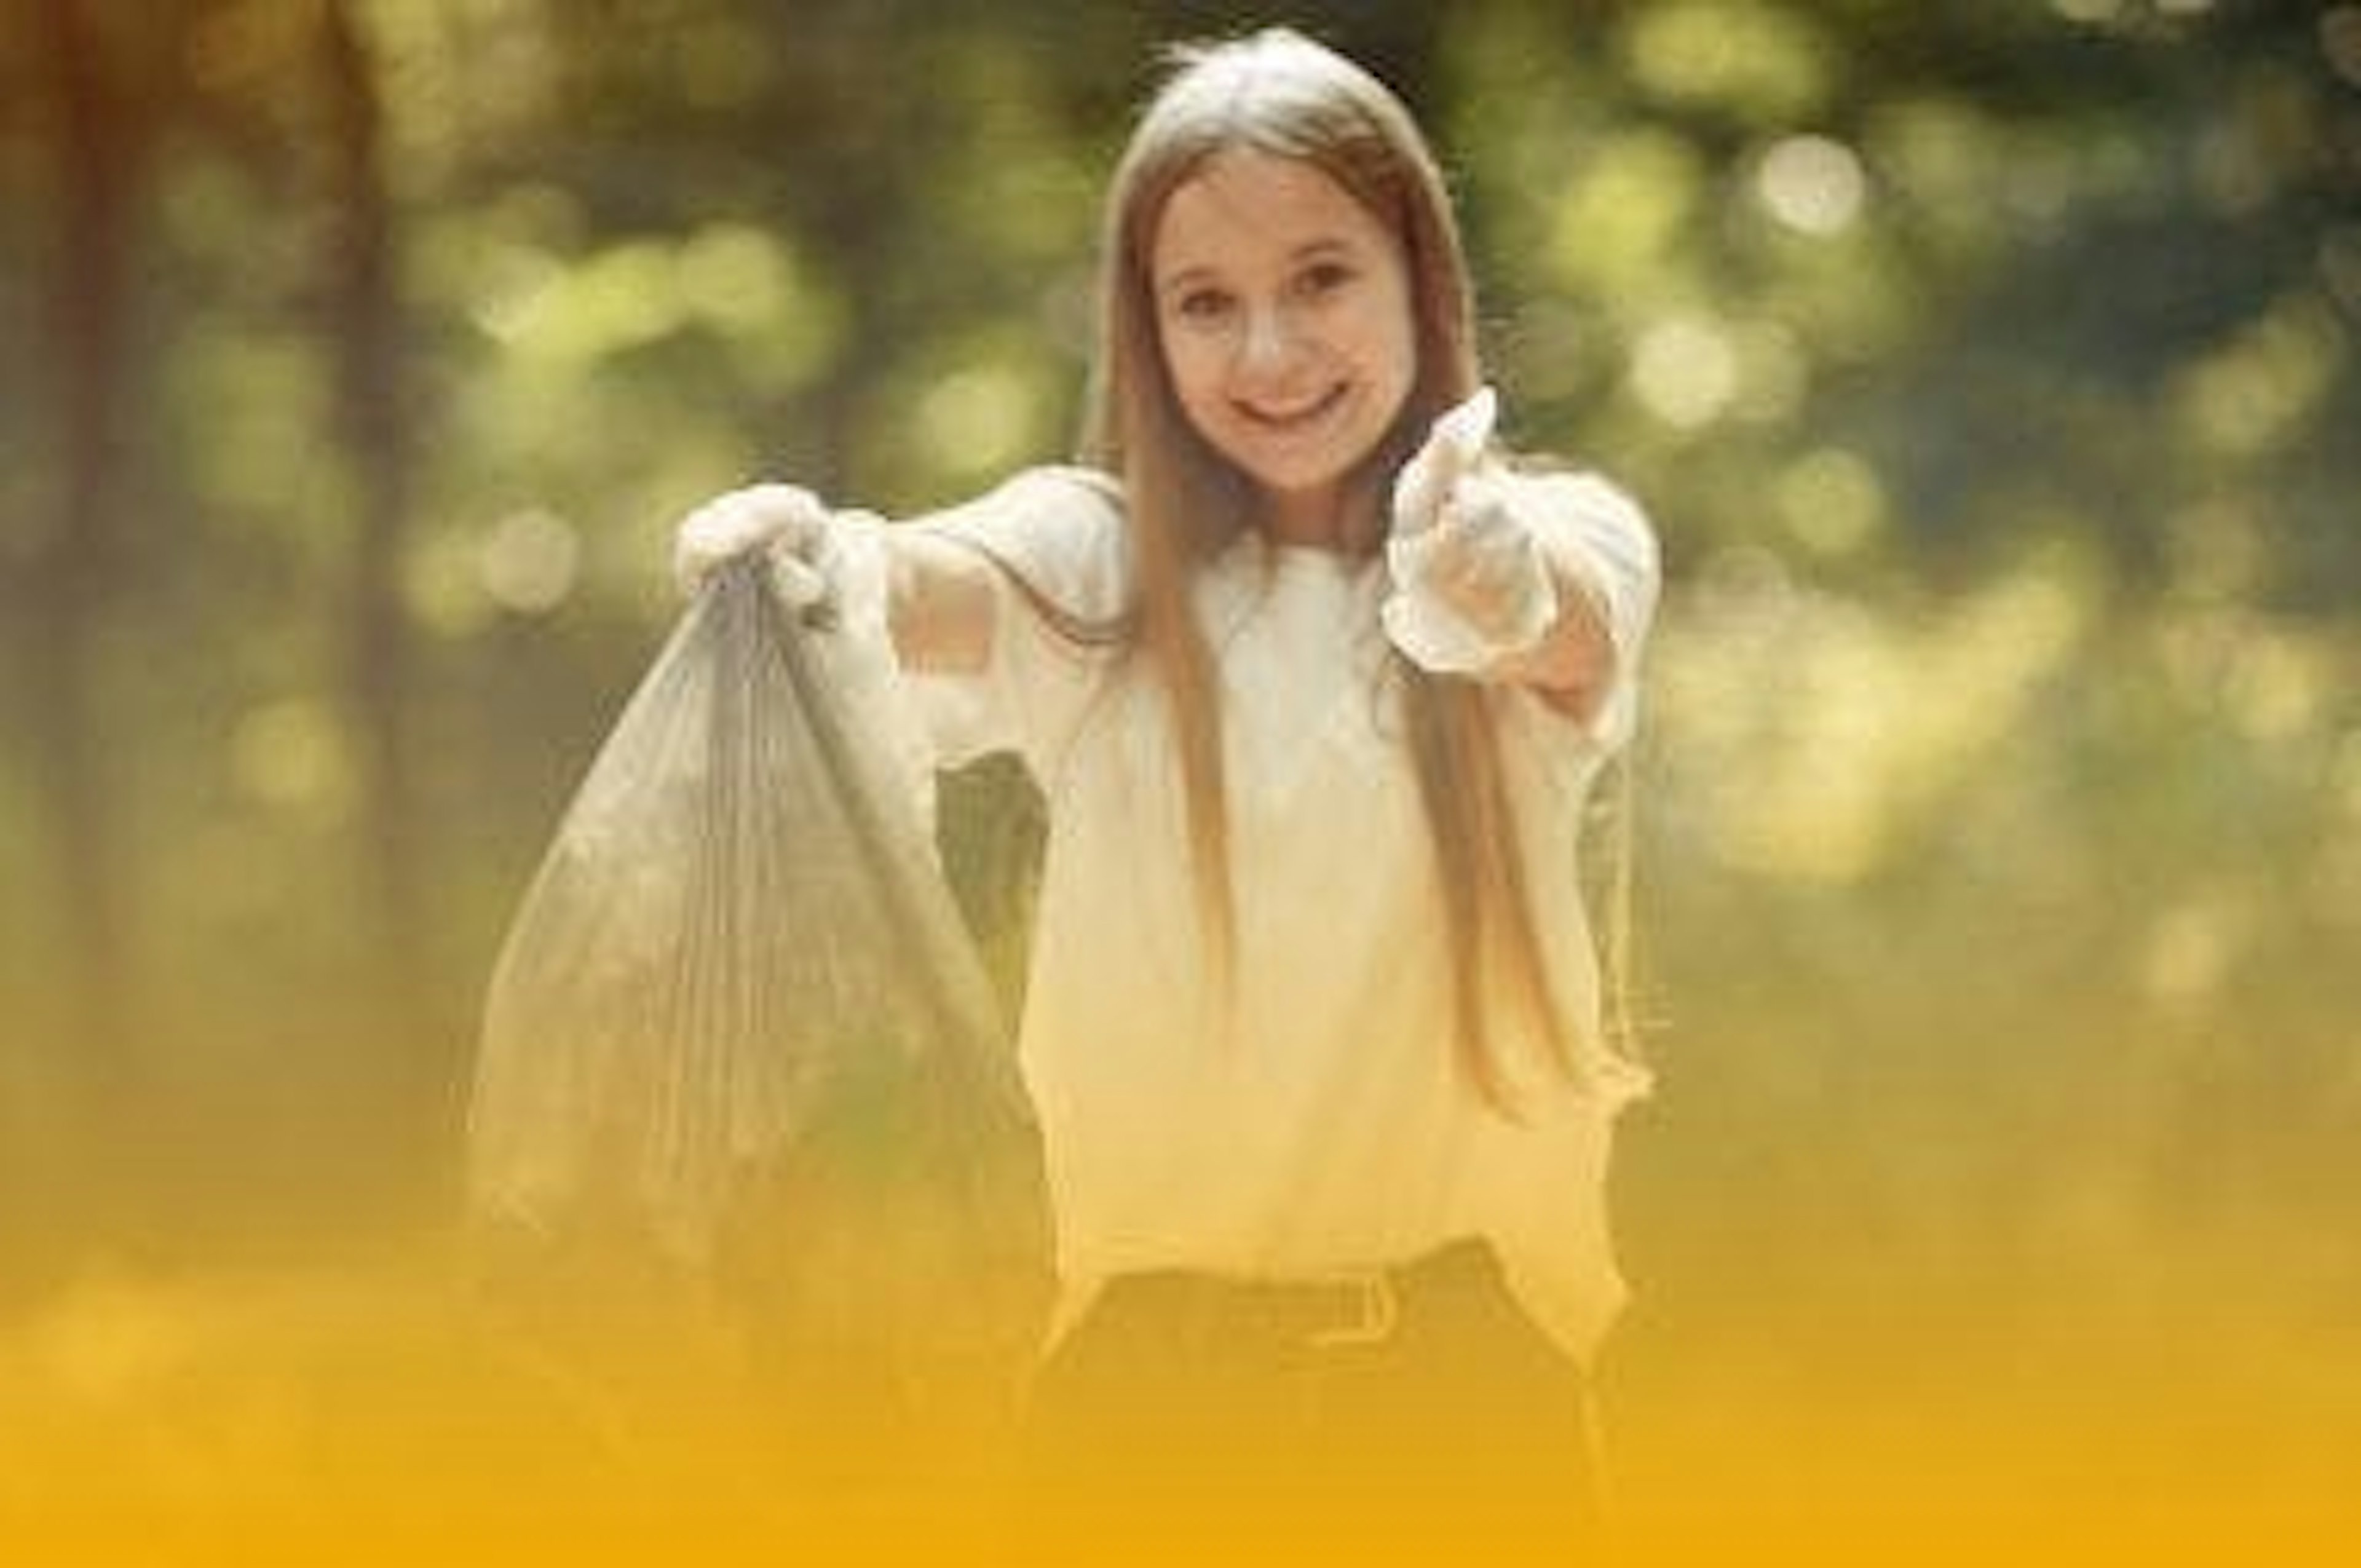 garota loira sorri enquanto segura um saco de lixo 